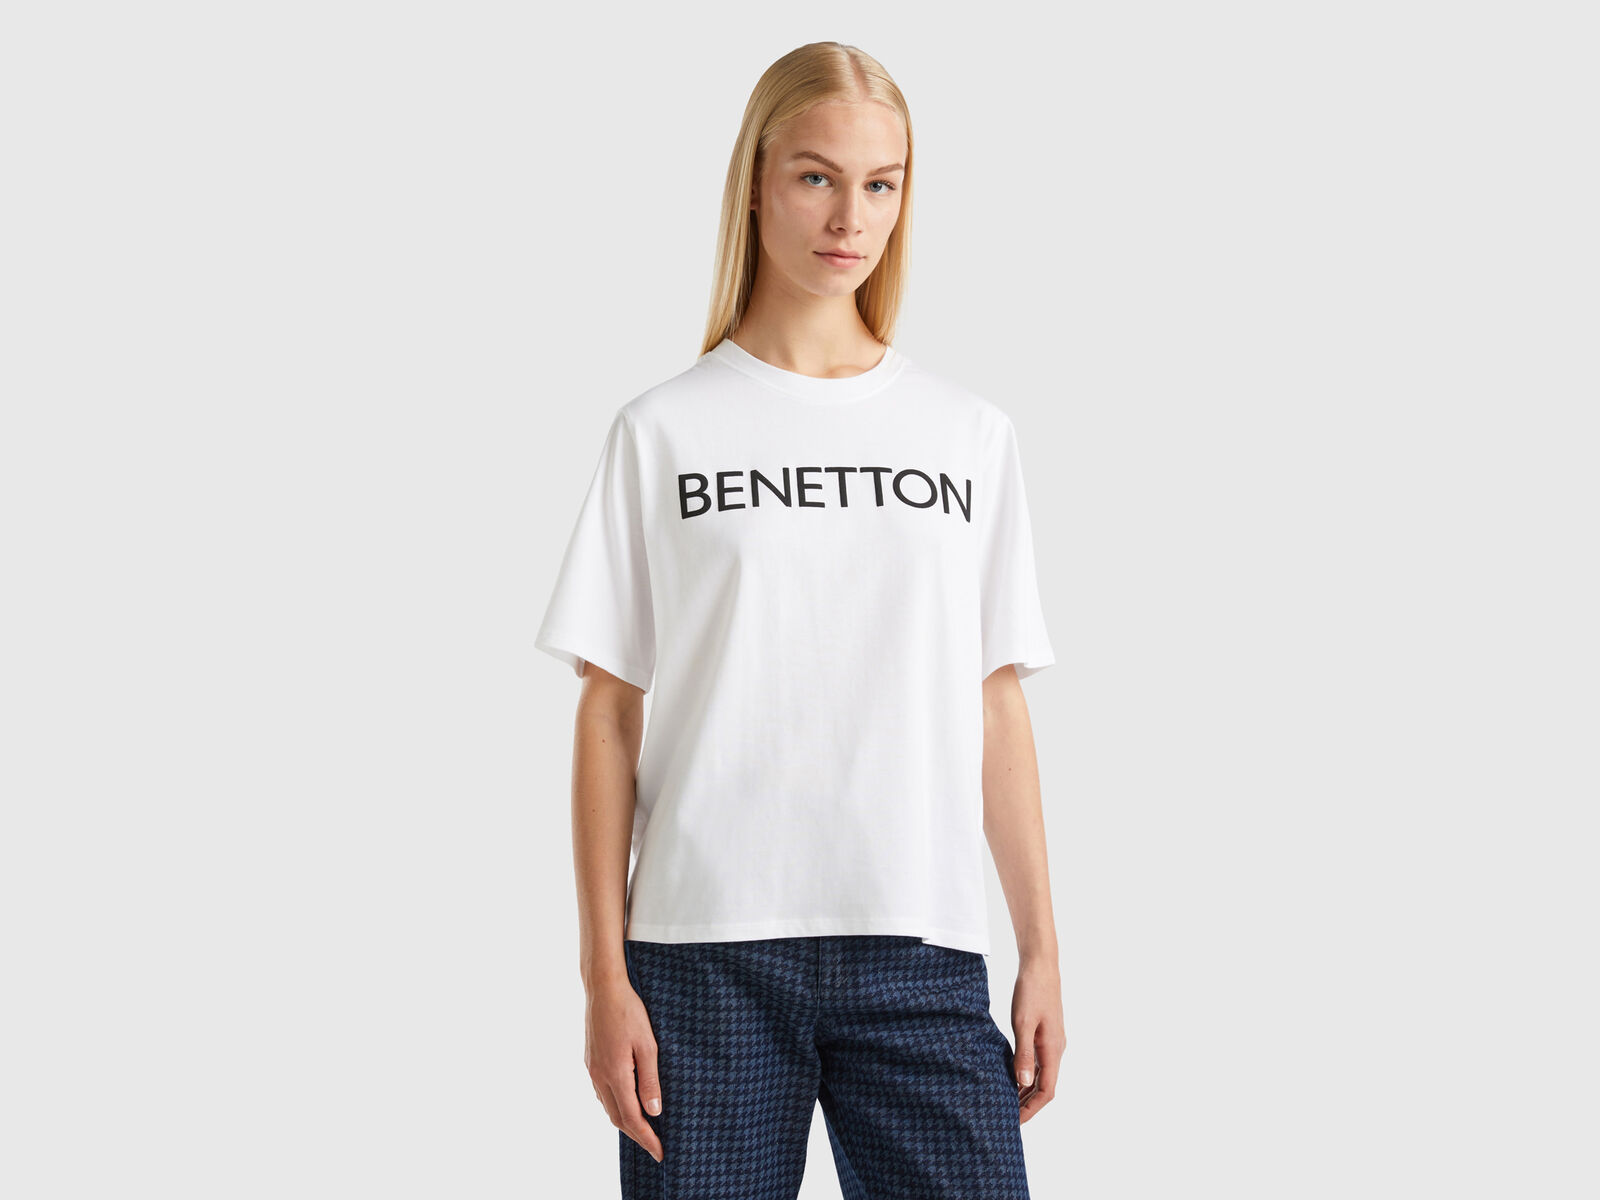 White T-shirt text | Benetton - logo with